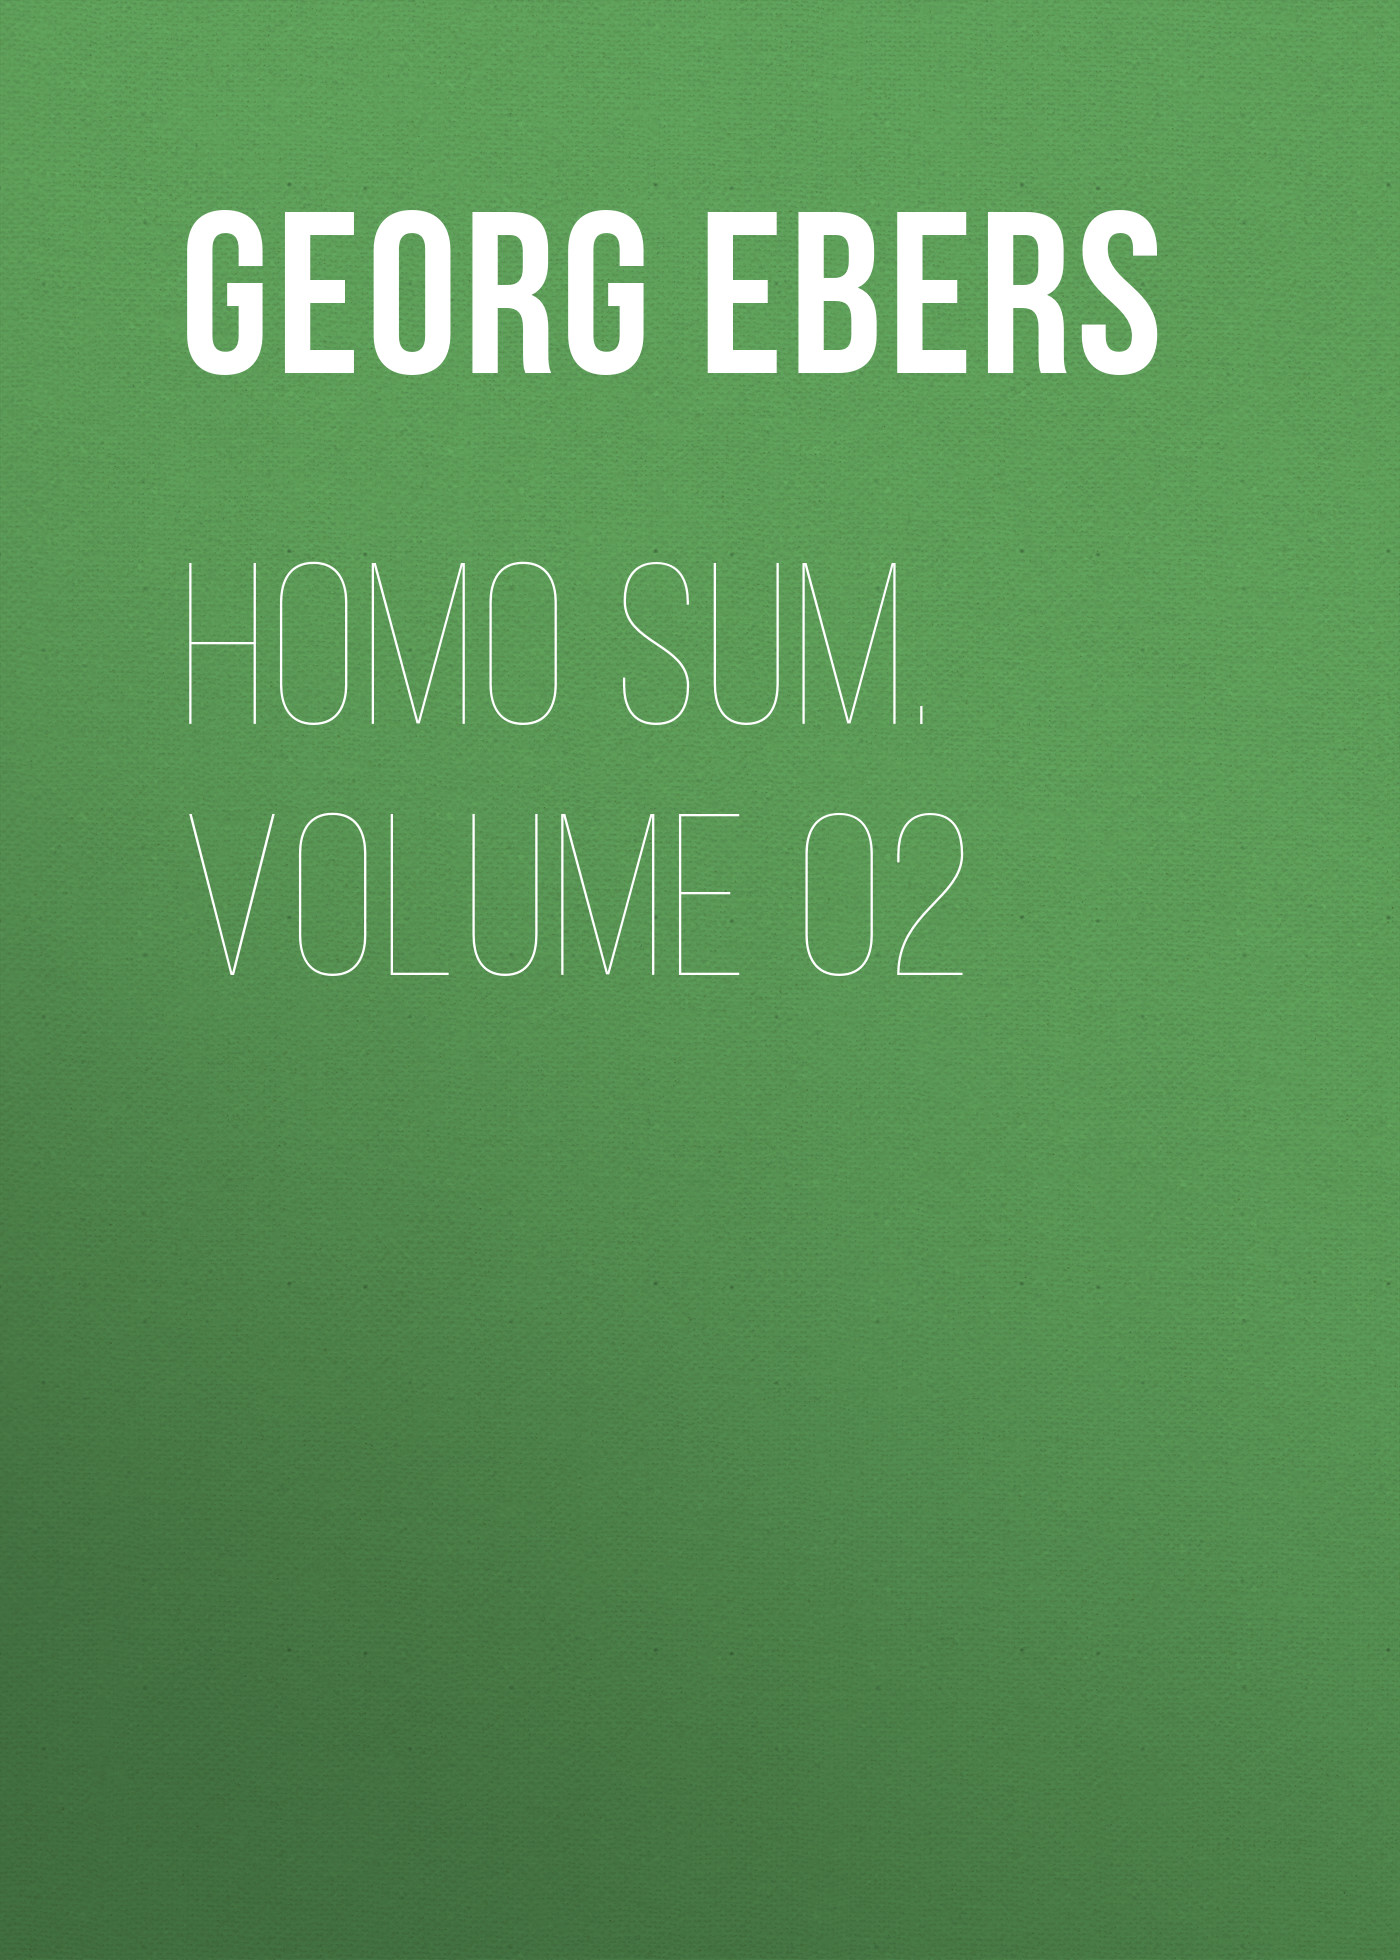 Книга Homo Sum. Volume 02 из серии , созданная Georg Ebers, может относится к жанру Зарубежная классика, Зарубежная старинная литература. Стоимость электронной книги Homo Sum. Volume 02 с идентификатором 42628147 составляет 0 руб.